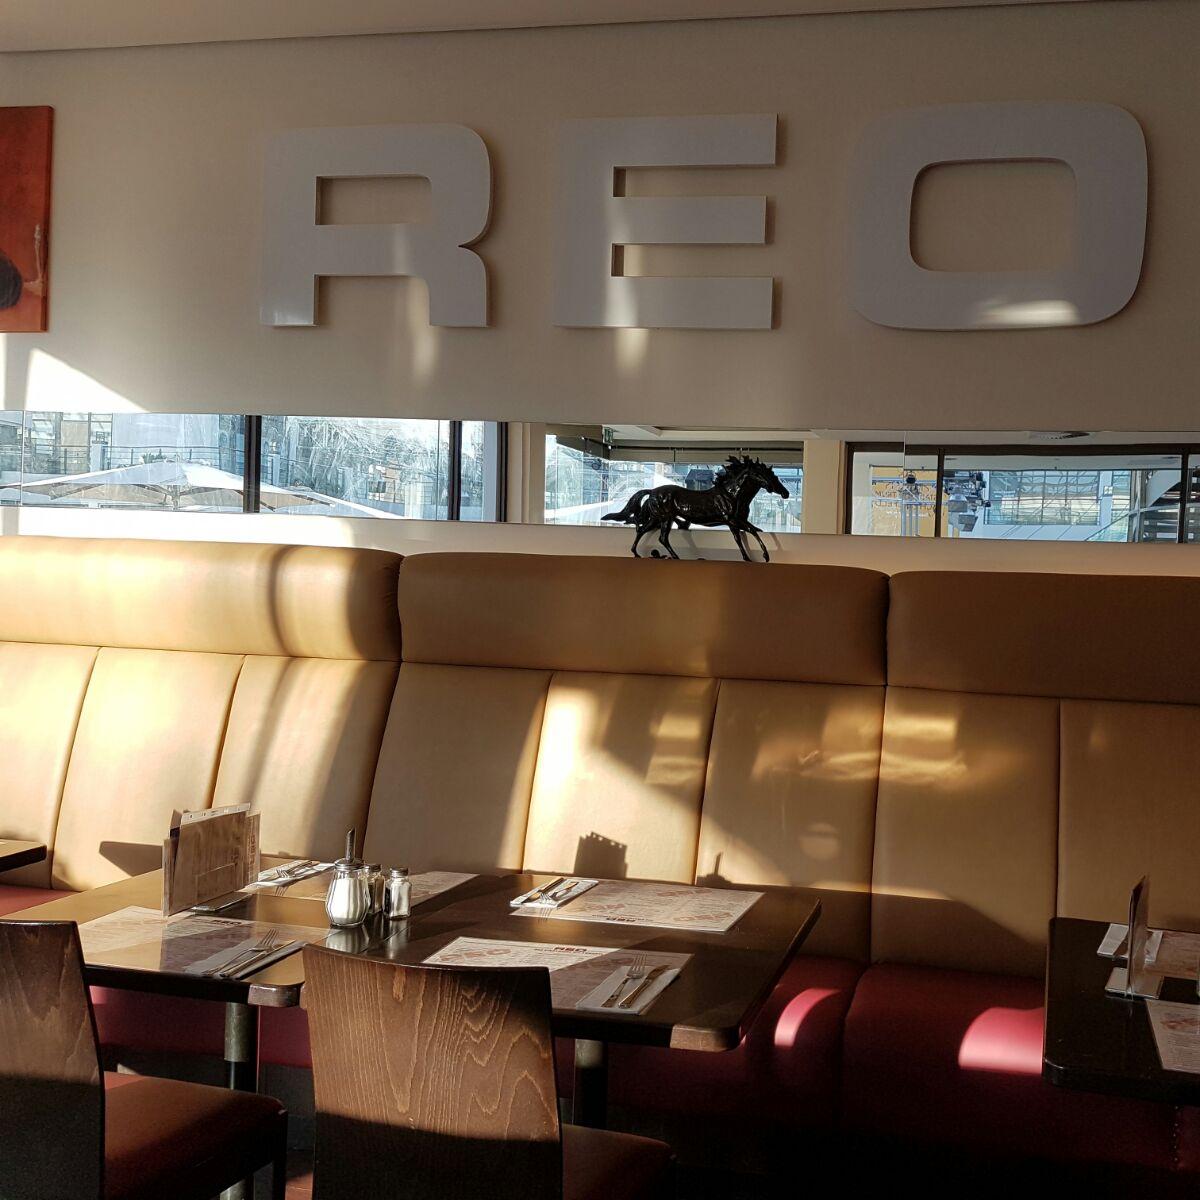 Restaurant "Reo Steakhouse" in Schenefeld